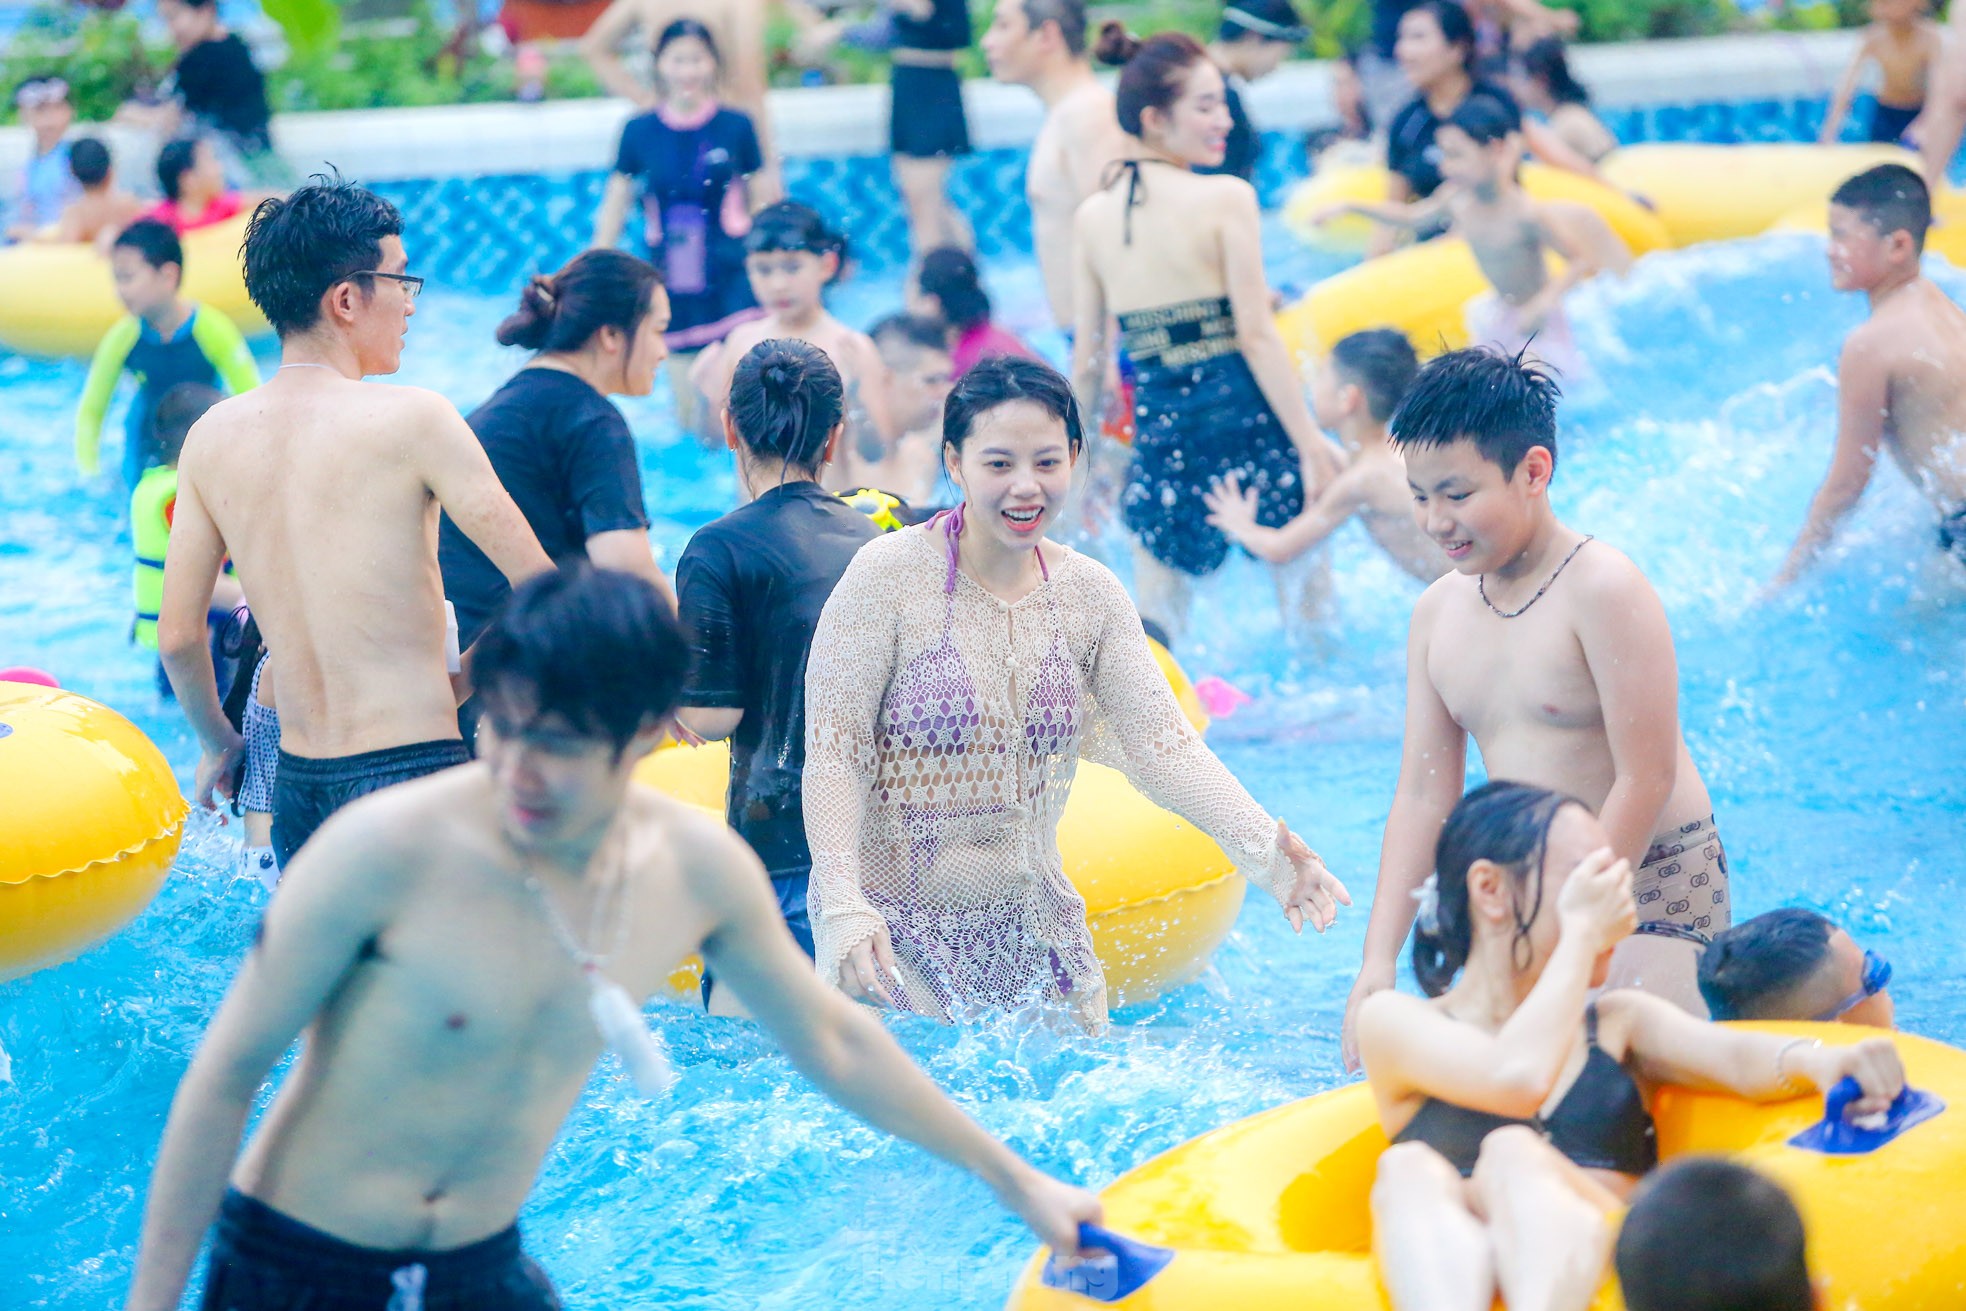 "الحرارة شديدة"، يتدفق الناس إلى الحديقة المائية في أيام العطلات، الصورة 20